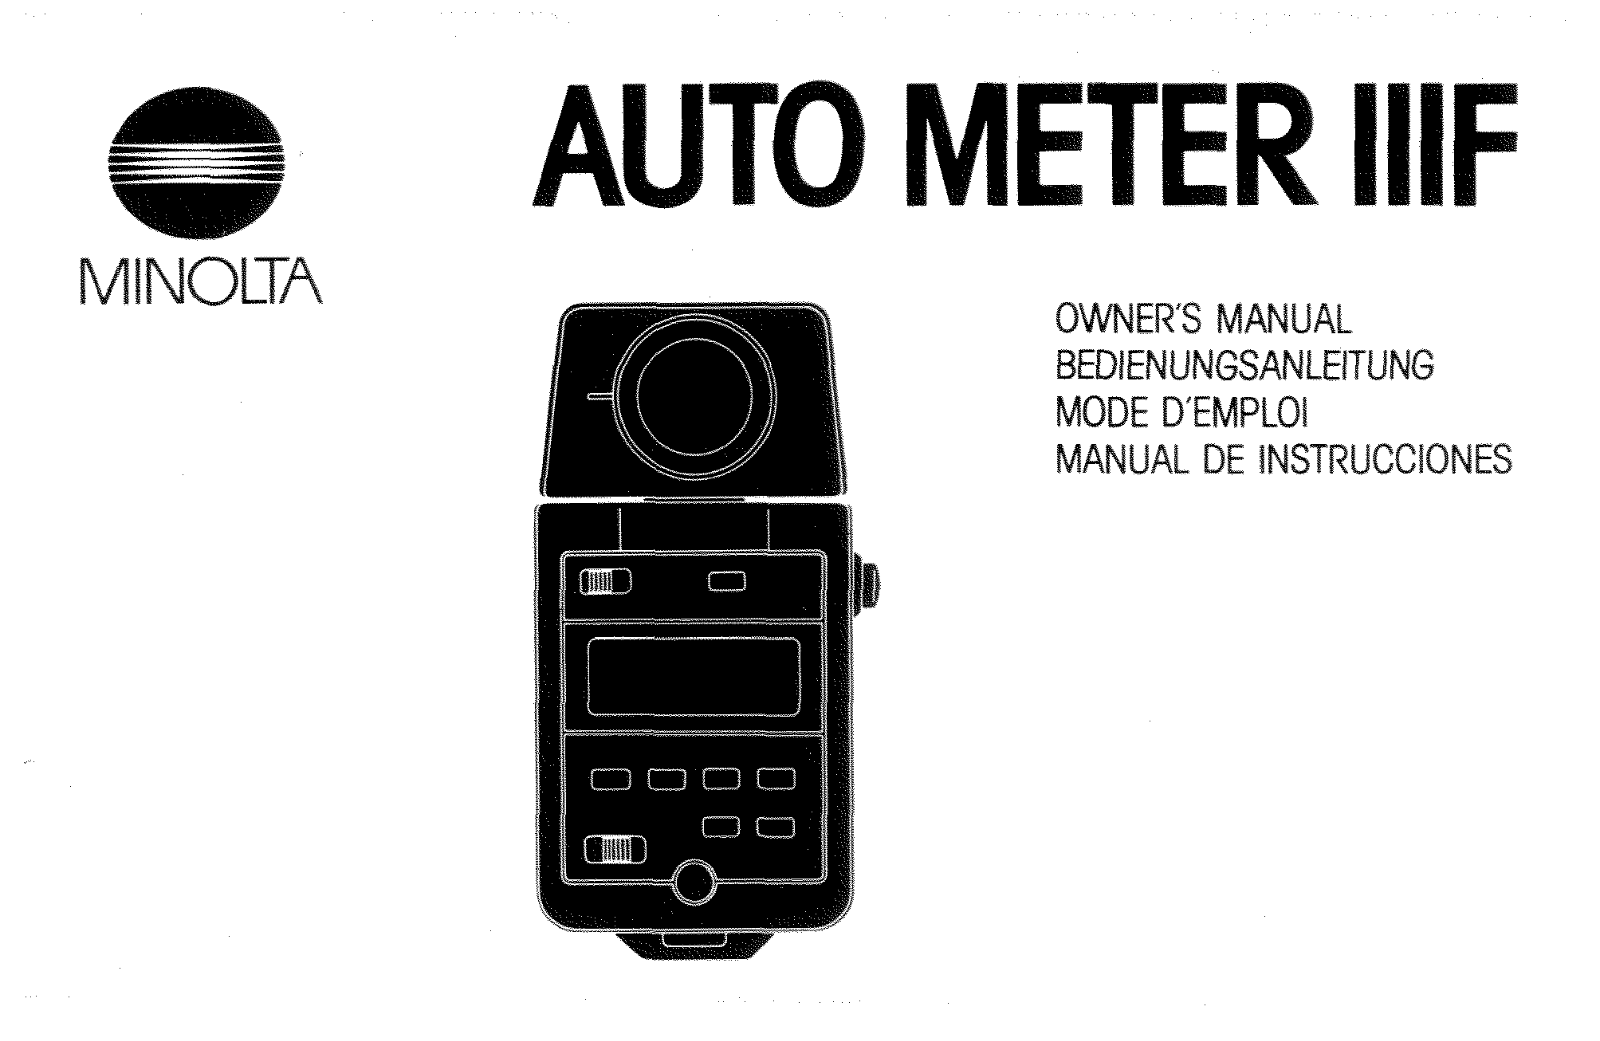 Minolta AUTO METER IIIF user guide